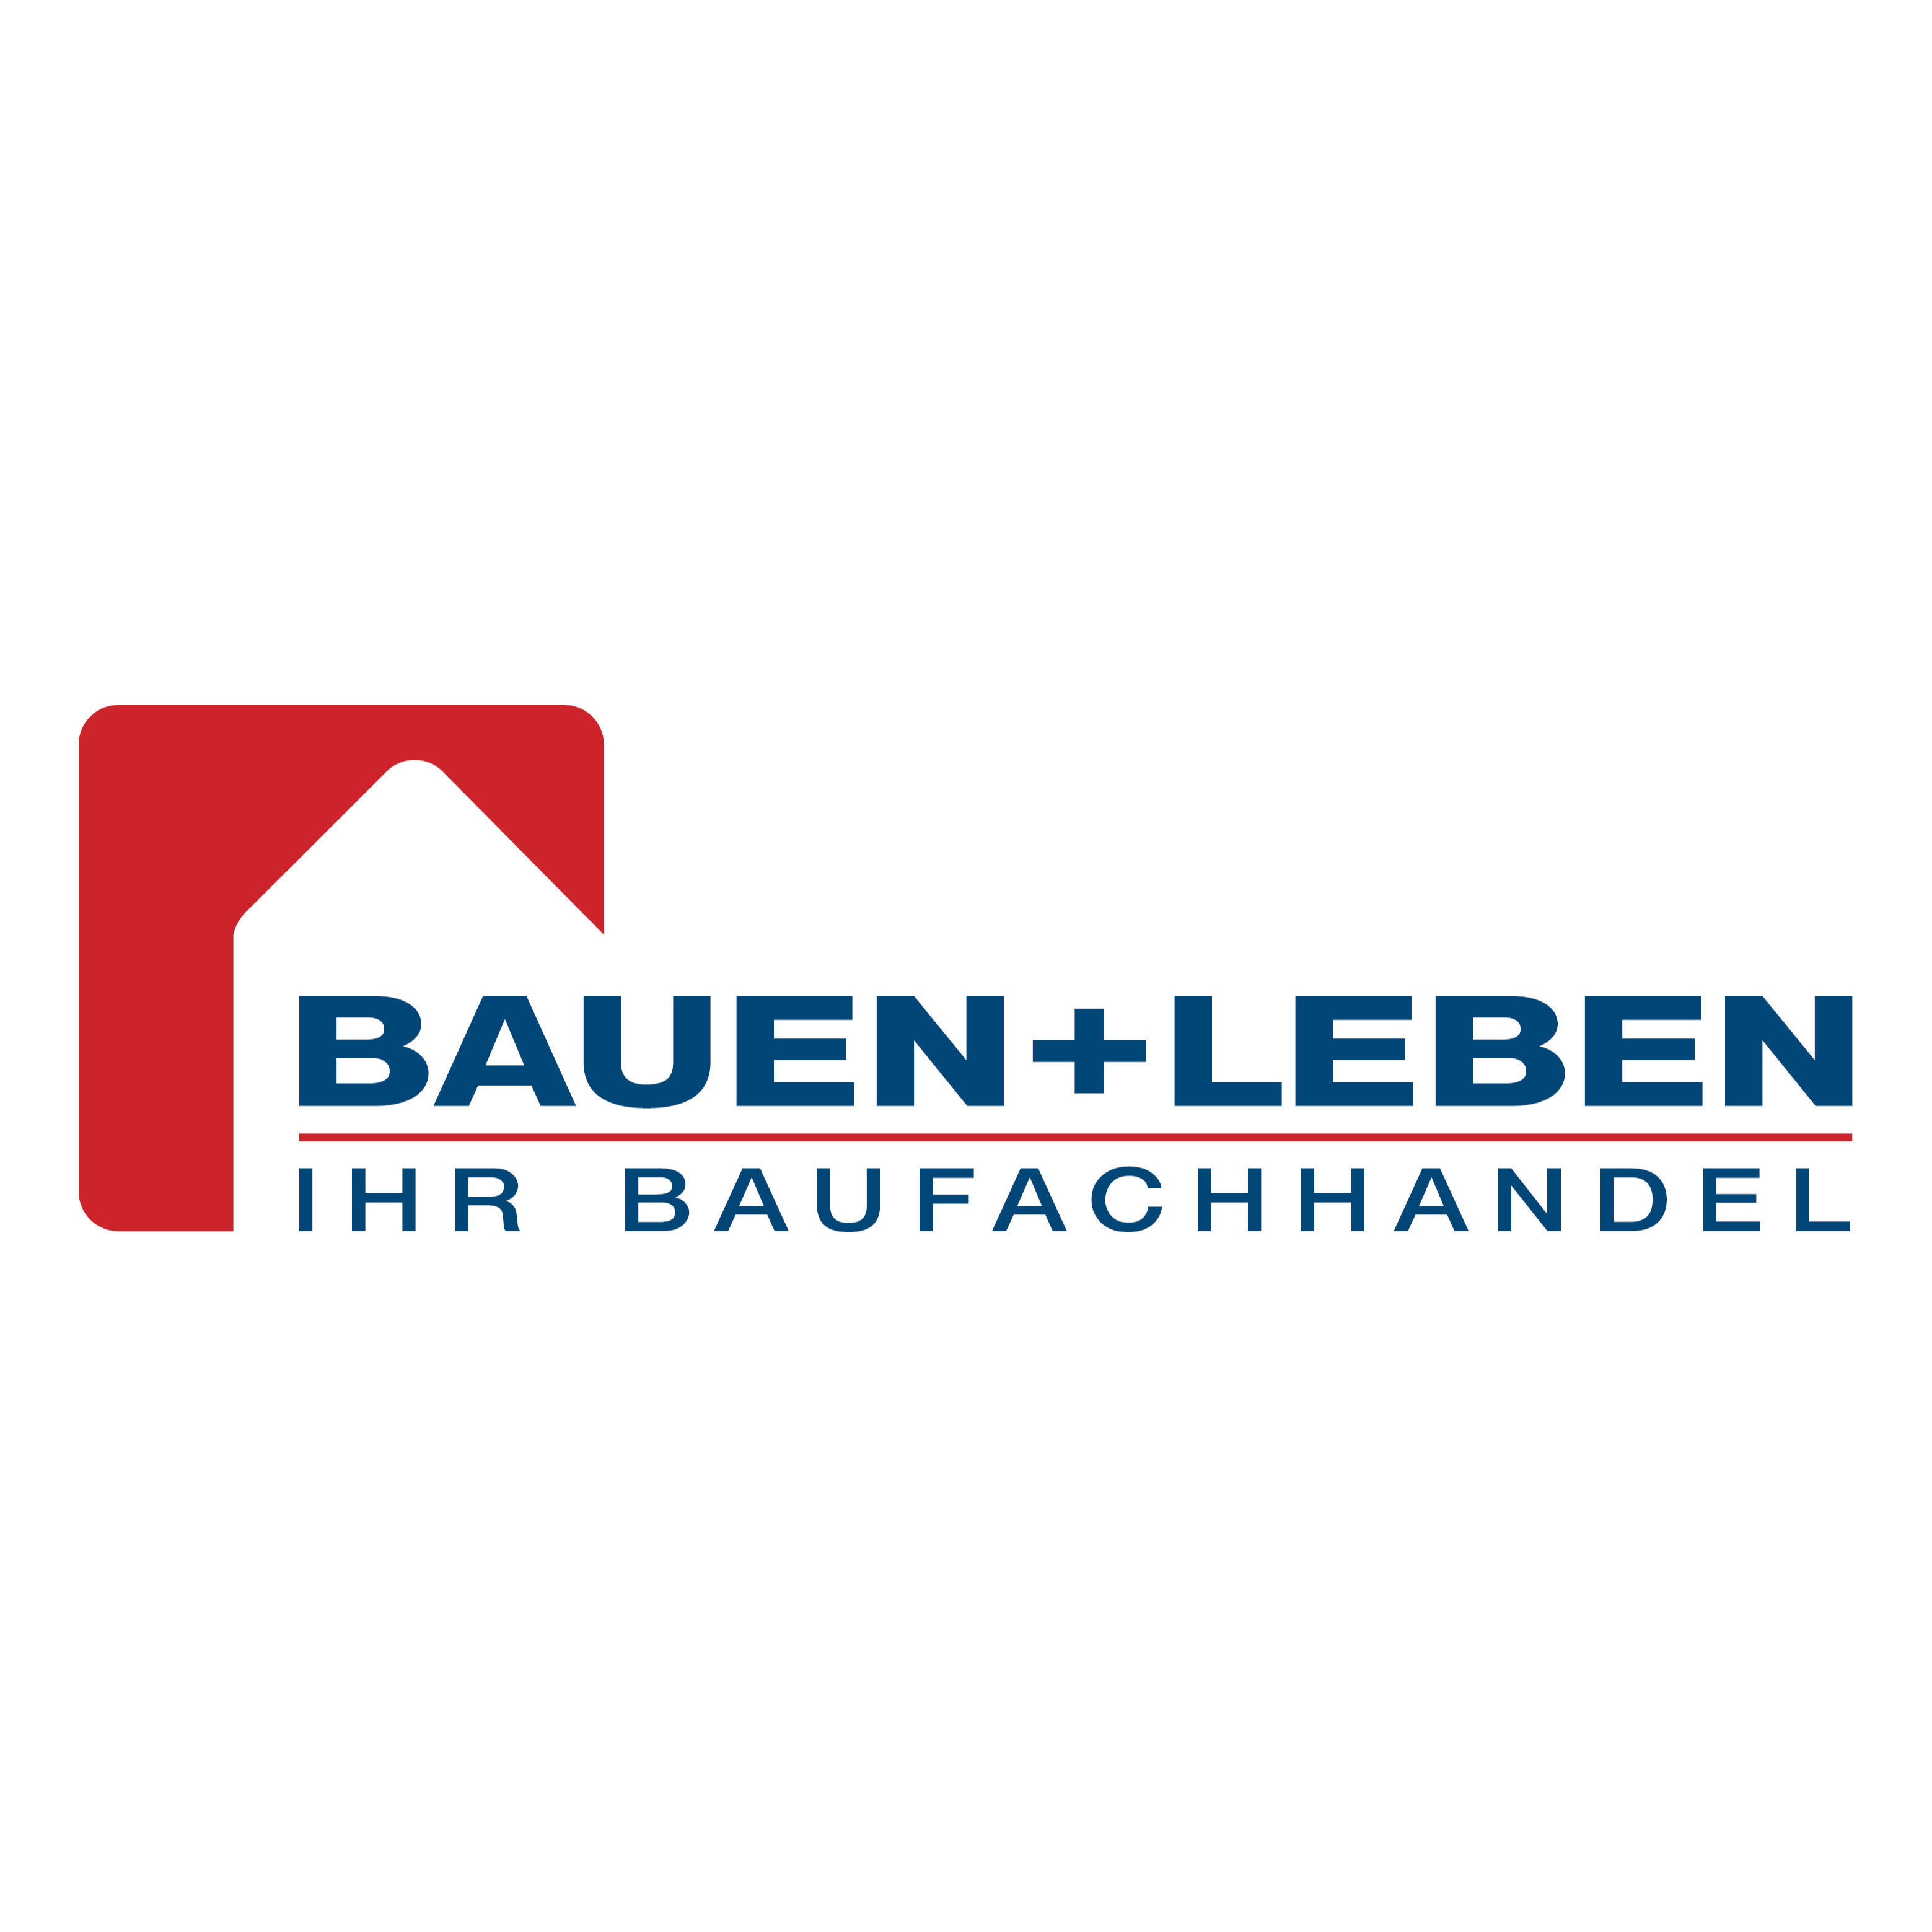 BAUEN+LEBEN - Ihr Baufachhandel | BAUEN+LEBEN team baucenter GmbH & Co. KG Logo